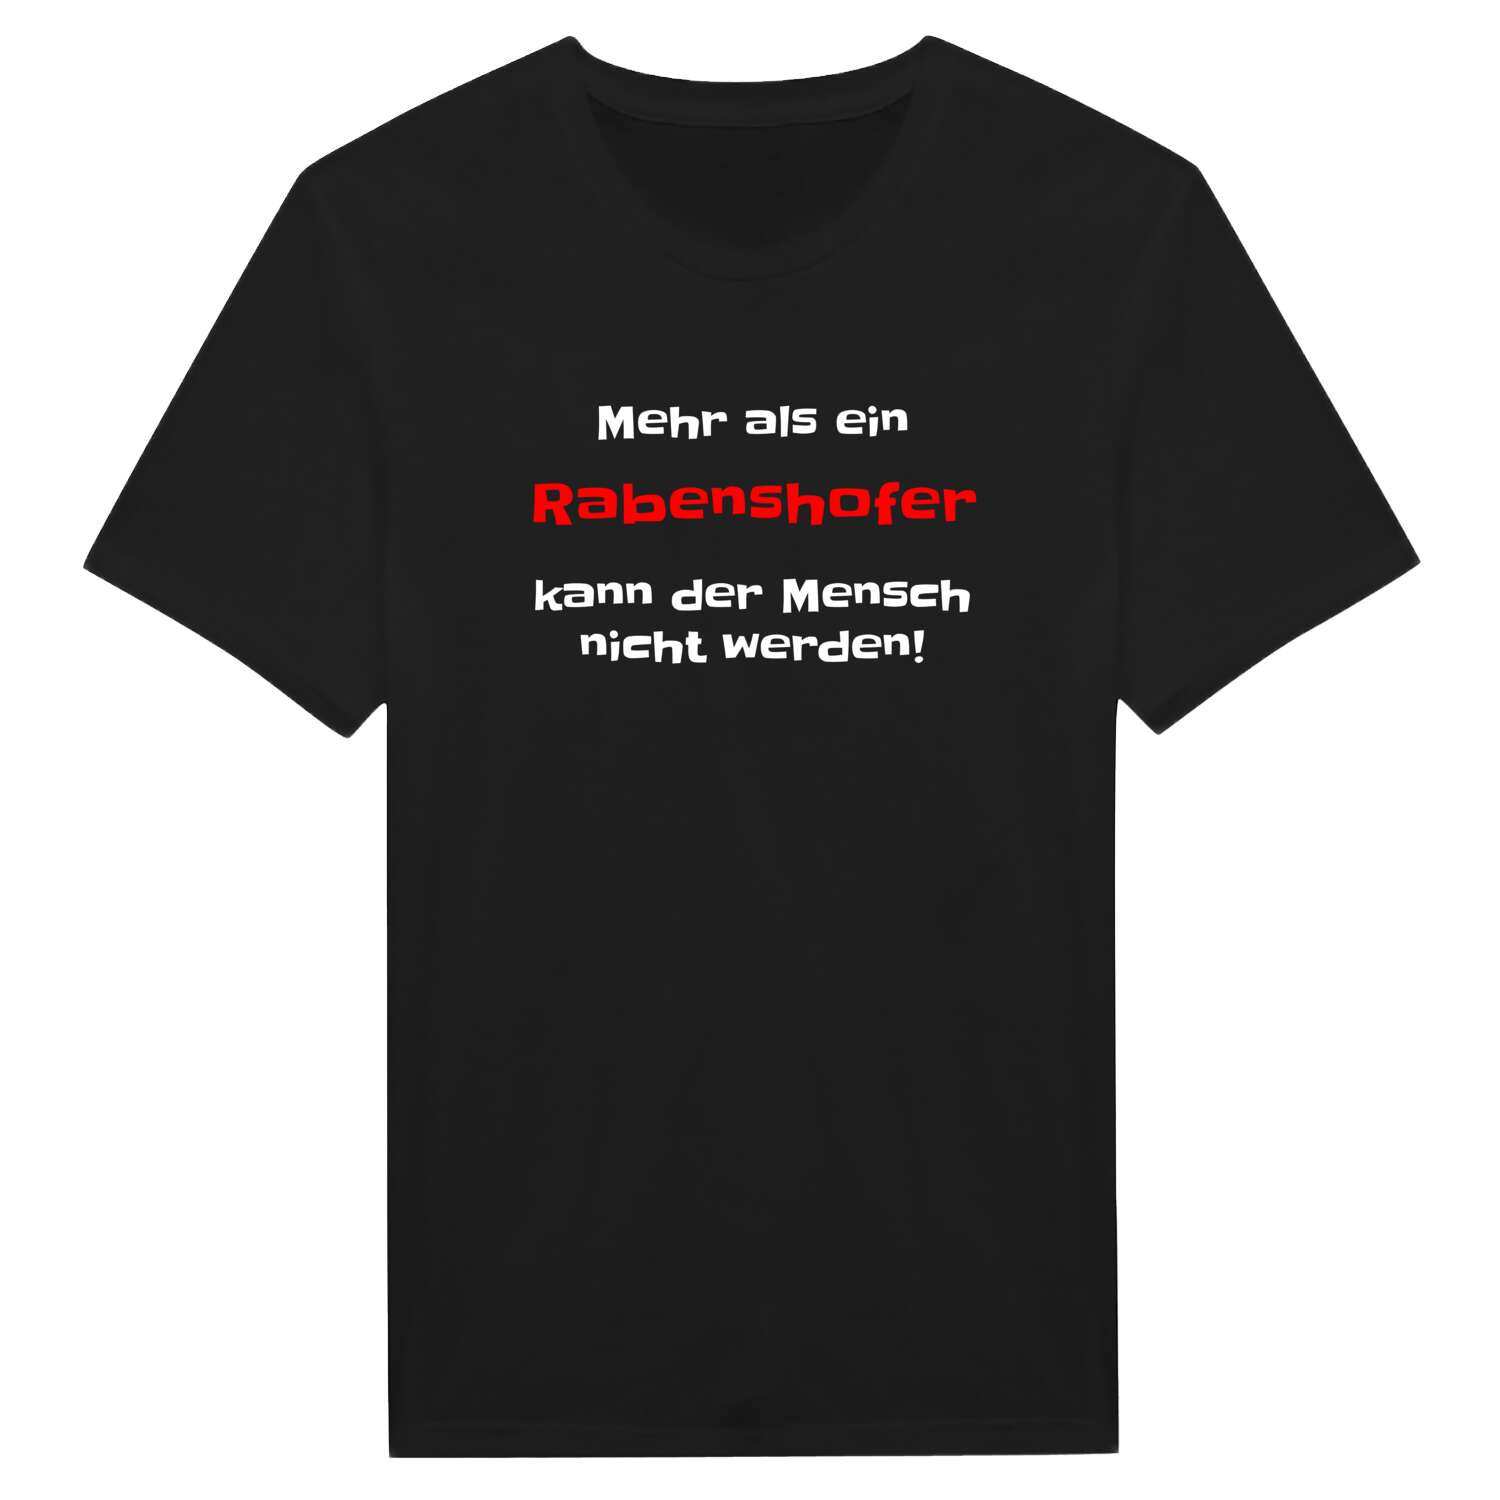 Rabenshof T-Shirt »Mehr als ein«